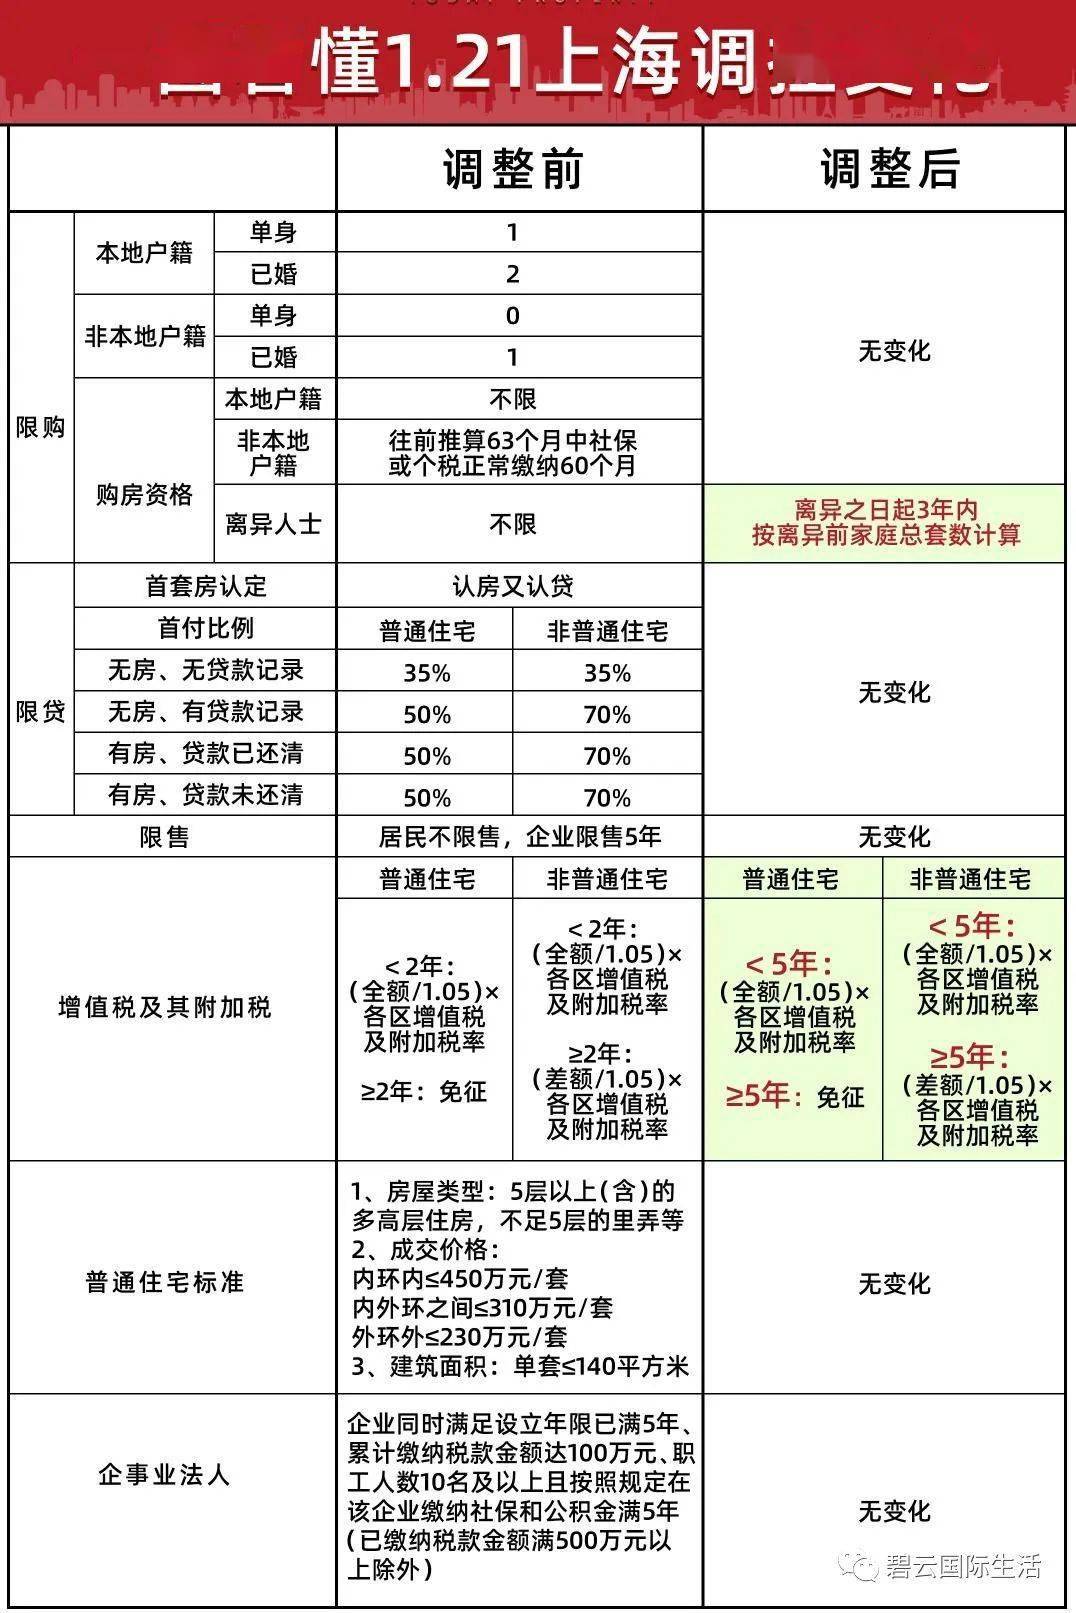 上海3月25日房产新政_上海9月房产新政_2010年4月北京房产新政